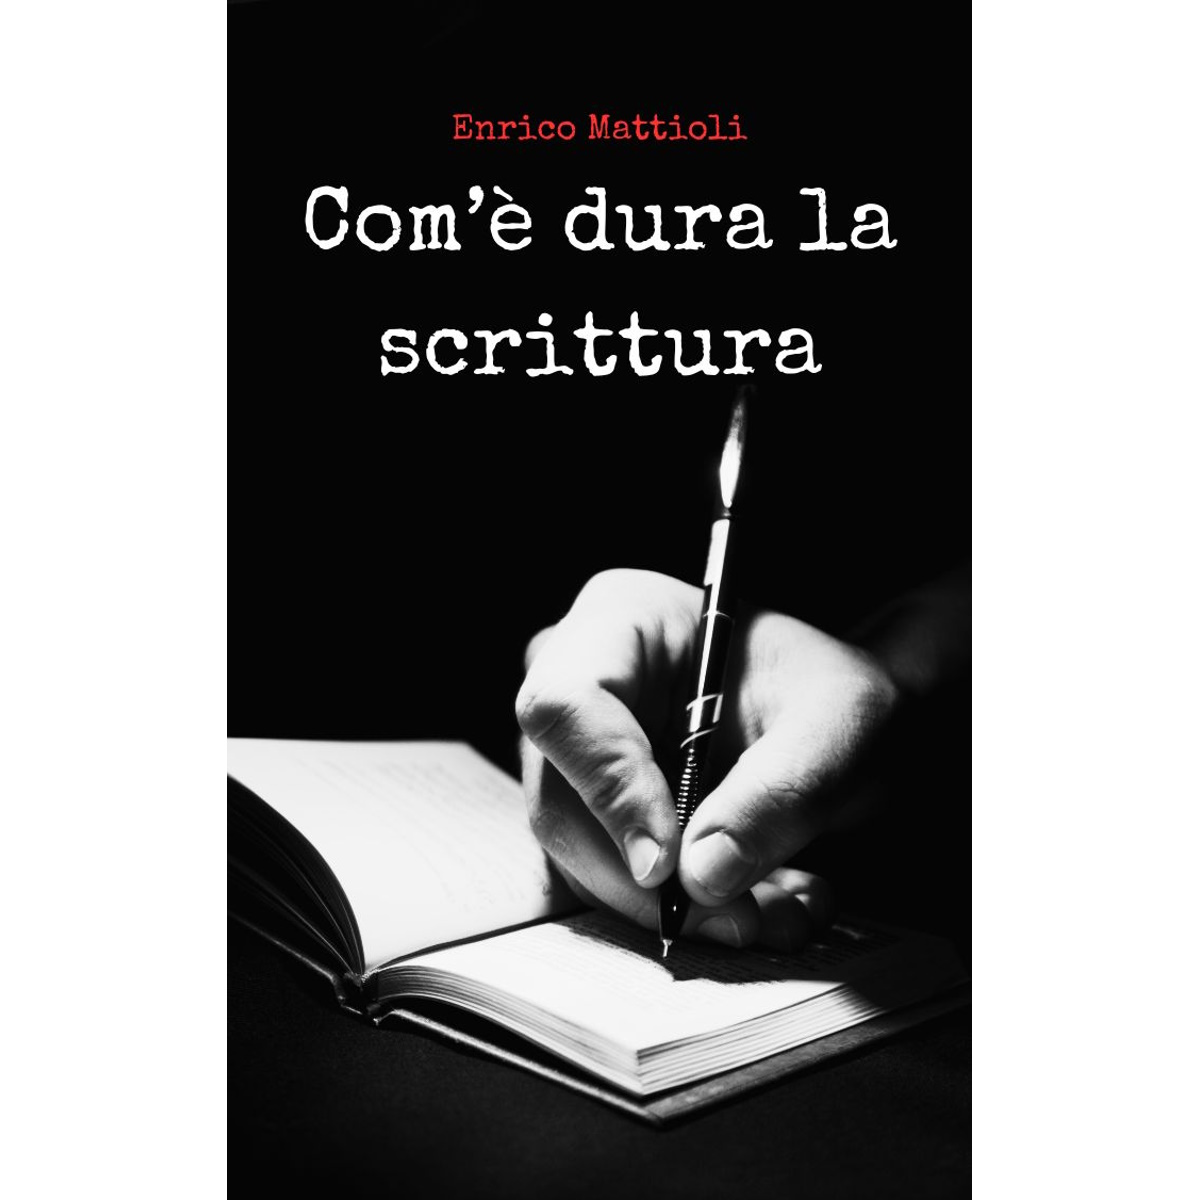 Com’è dura la scrittura — Enrico Mattioli — Introduzione